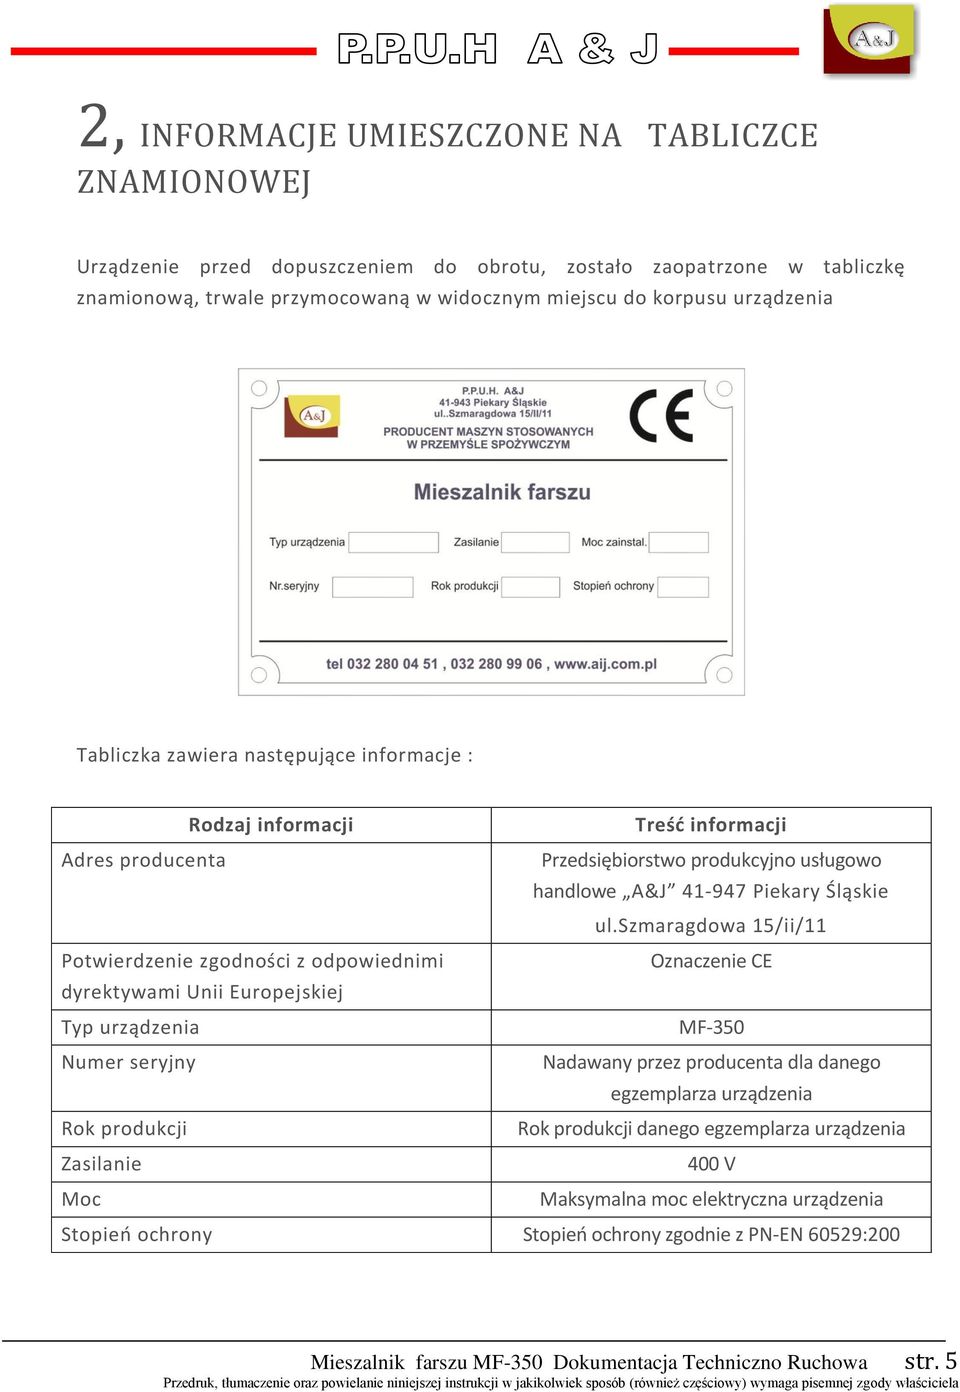 szmaragdowa 1/ii/11 Potwierdzenie zgodności z odpowiednimi Oznaczenie CE dyrektywami Unii Europejskiej Typ urządzenia MF-3 Numer seryjny Nadawany przez producenta dla danego egzemplarza urządzenia